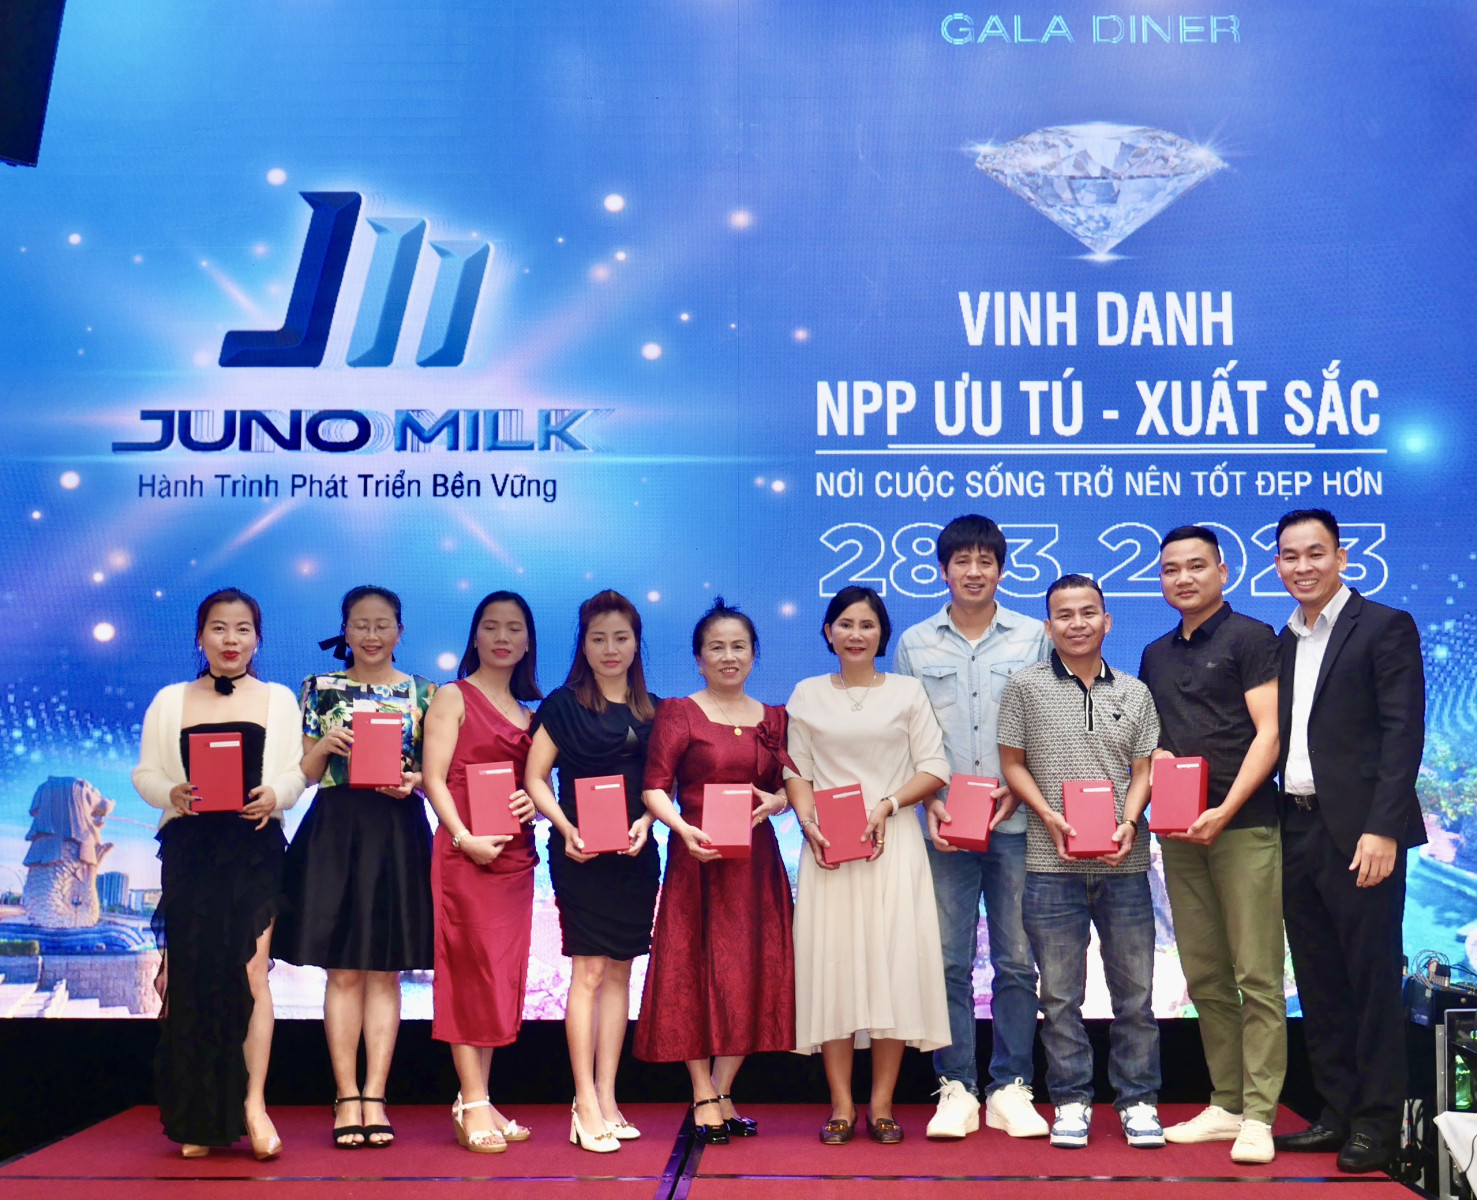 Vinh danh NPP ưu tú - xuất sắc đã đồng hành cùng Juno Milk trong đêm Gala Dinner tại Singapore 2023